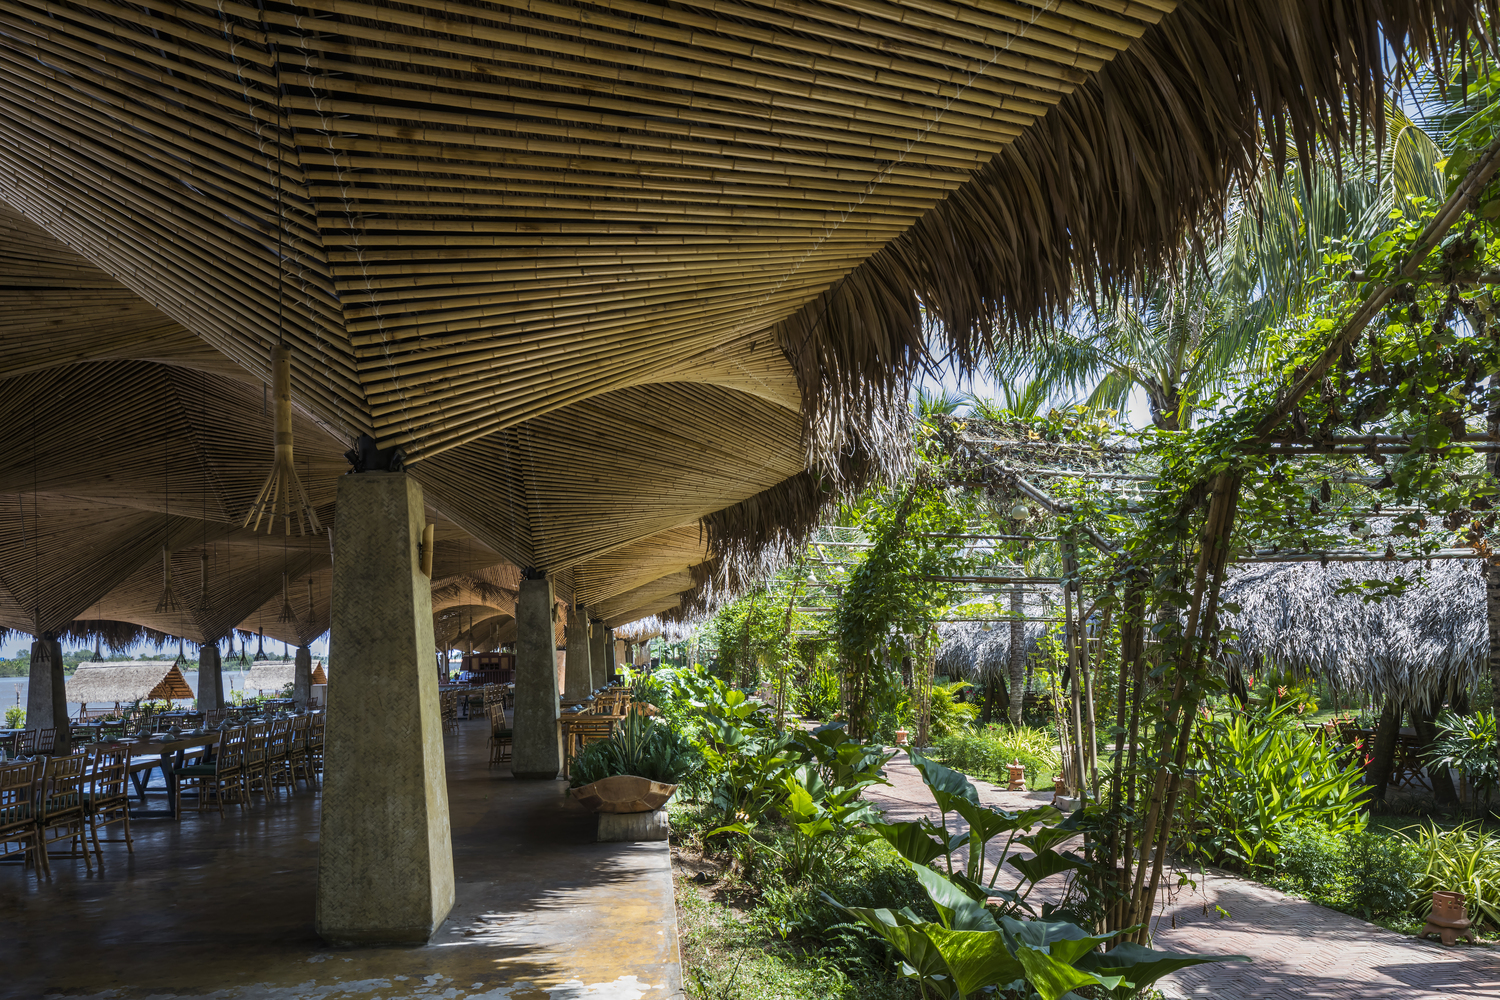 nhà hàng lợp lá dừa được bao quanh bởi cây cối xanh tốt